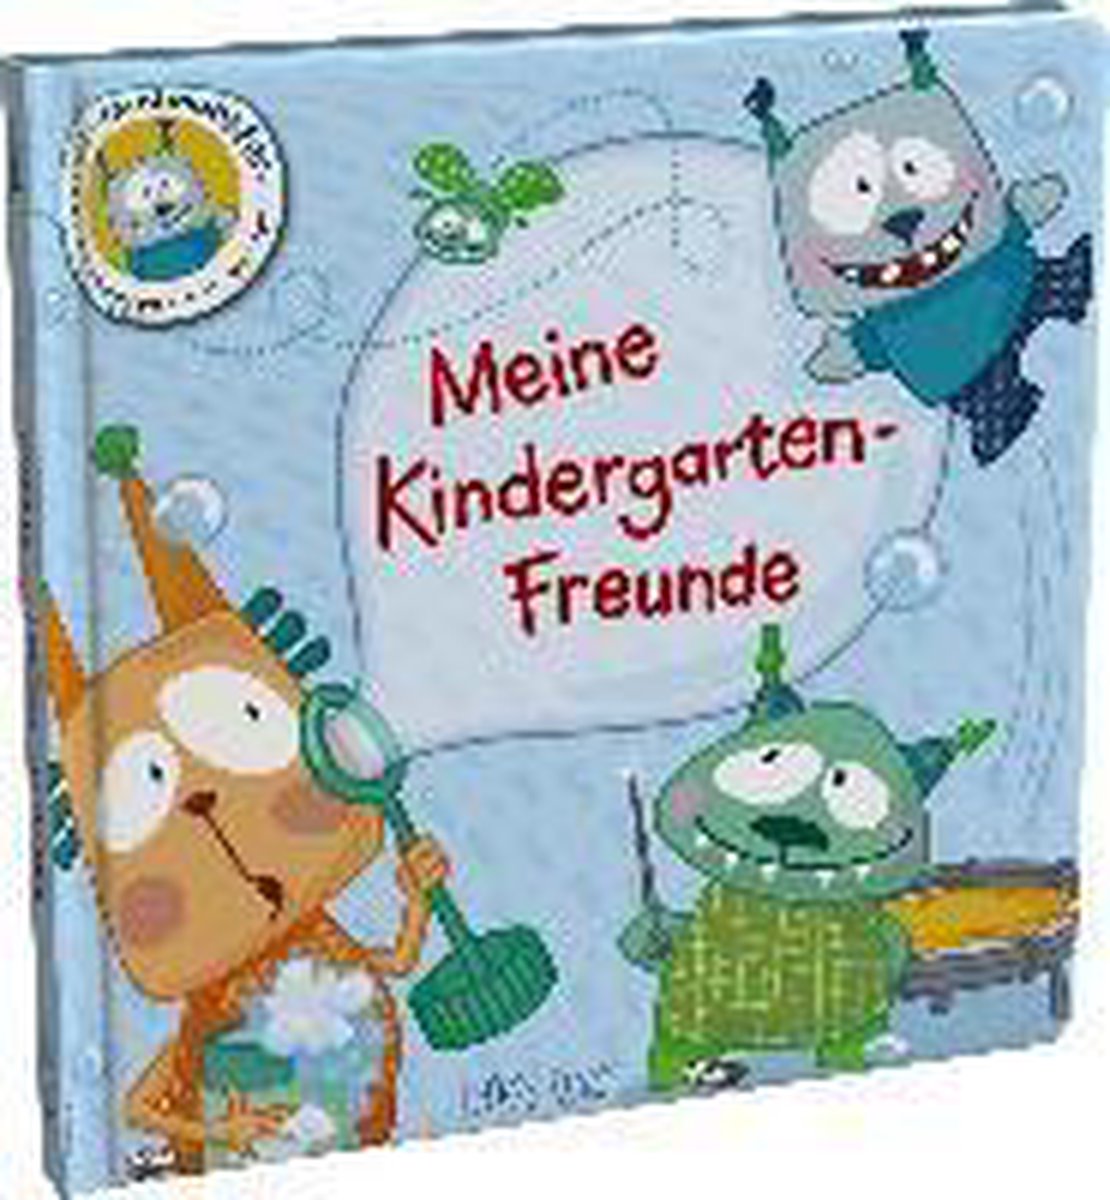 Freundebuch: Minimonster - Meine Kindergarten-Freunde